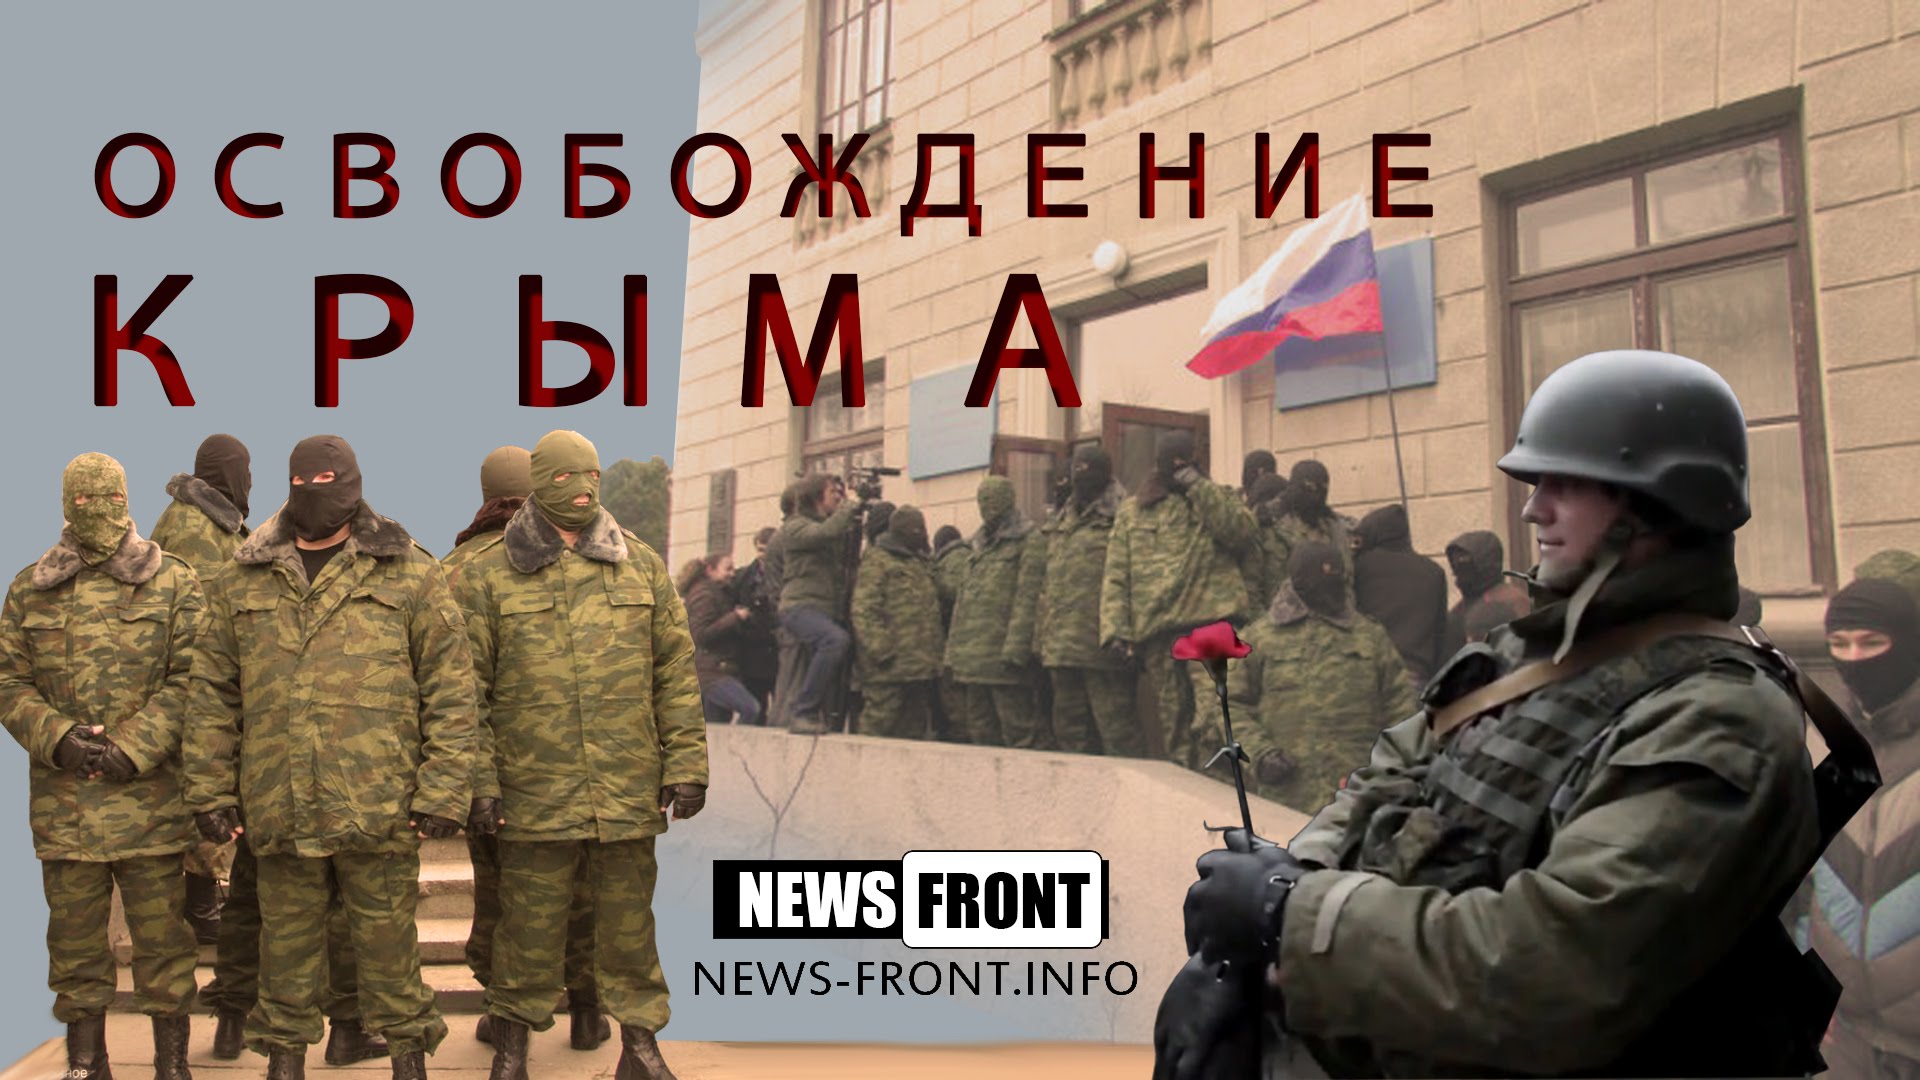 «Освобождение Крыма» - Документальный фильм News Front